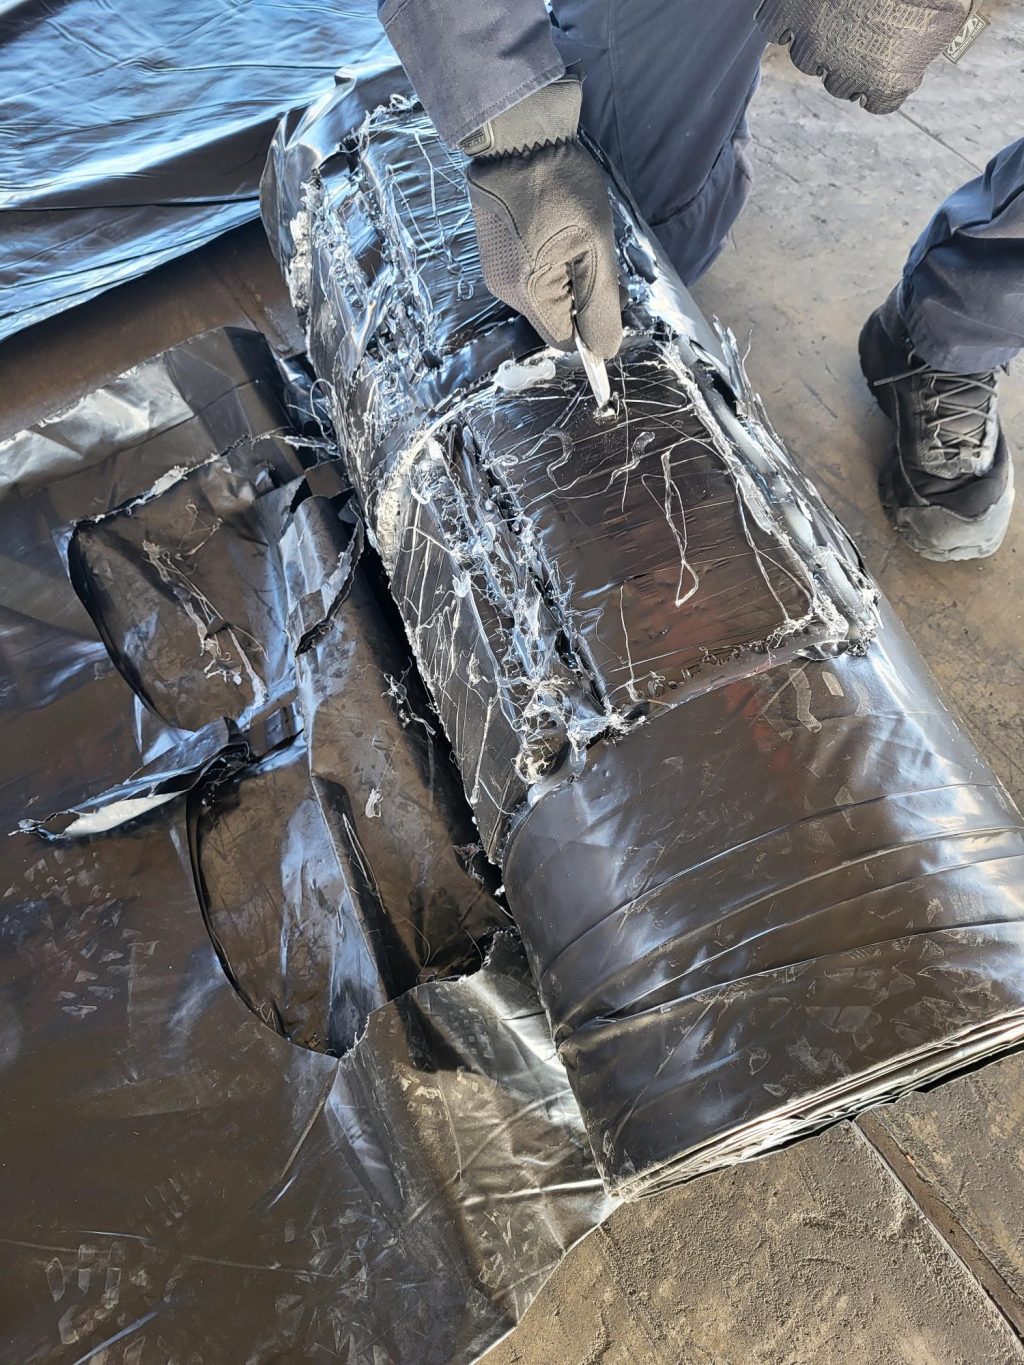 CBP confisca 172 libras de cocaína en Ysleta